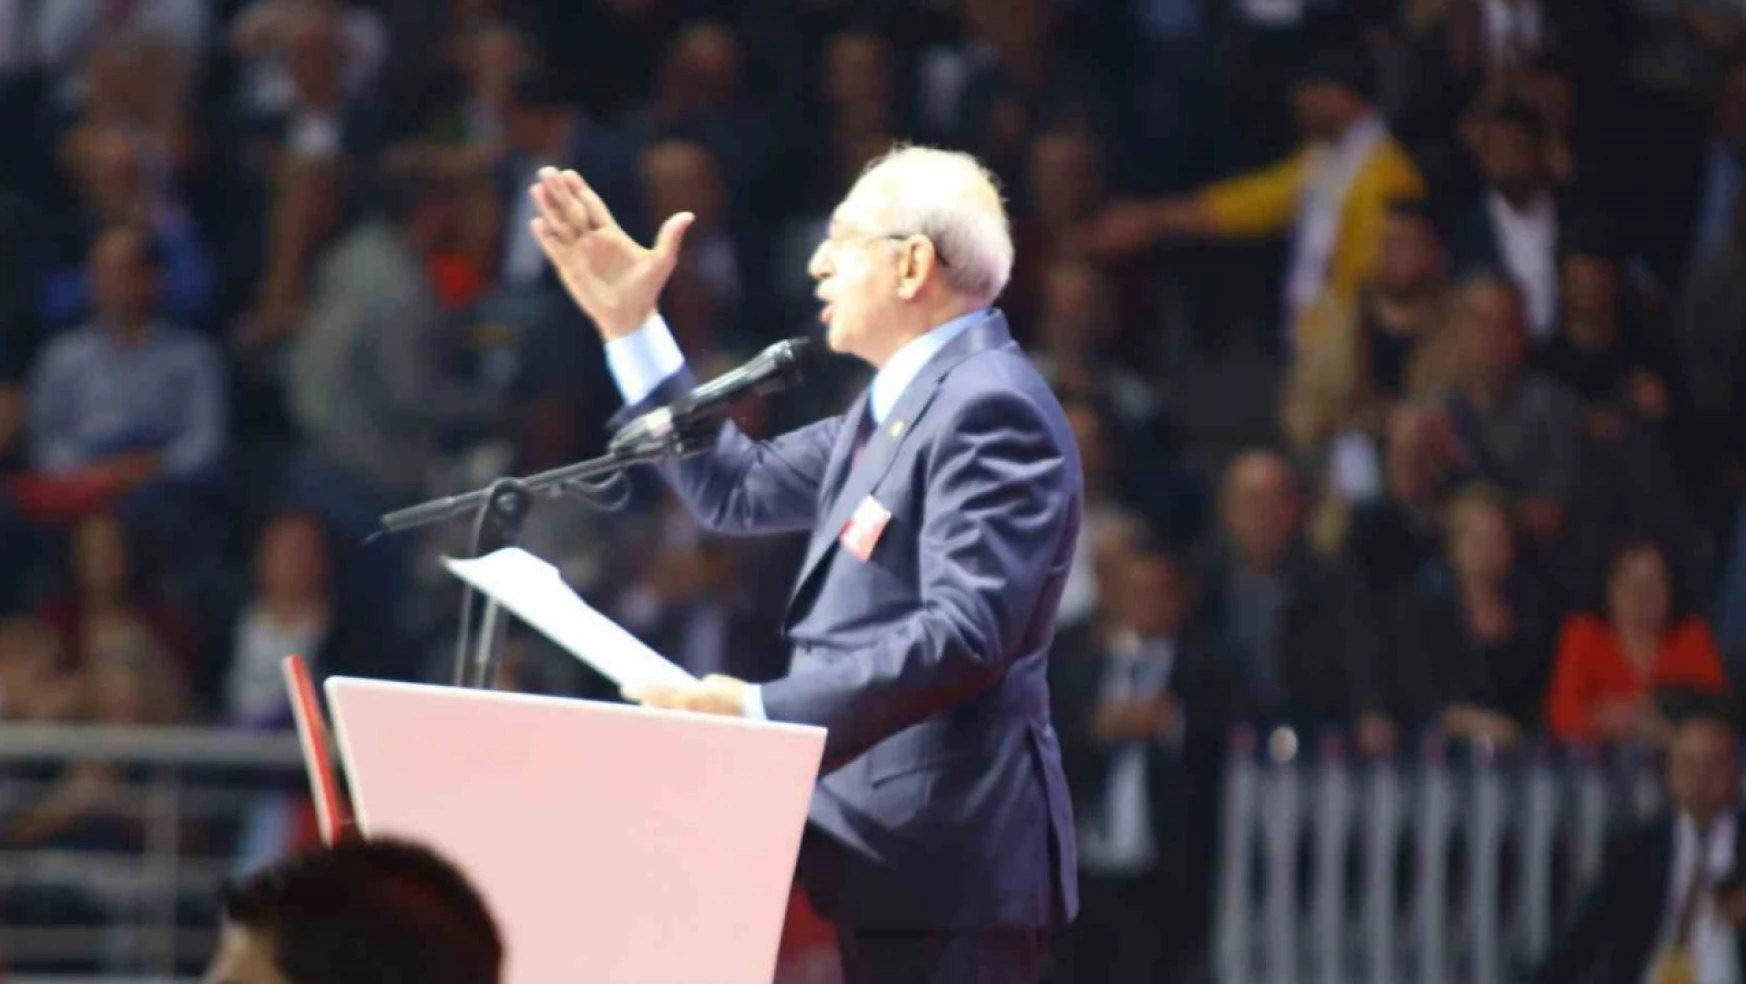 CHP Lideri Kılıçdaroğlu: 'Sırtımdaki hançerlerle seçime girmek zorunda kaldım'